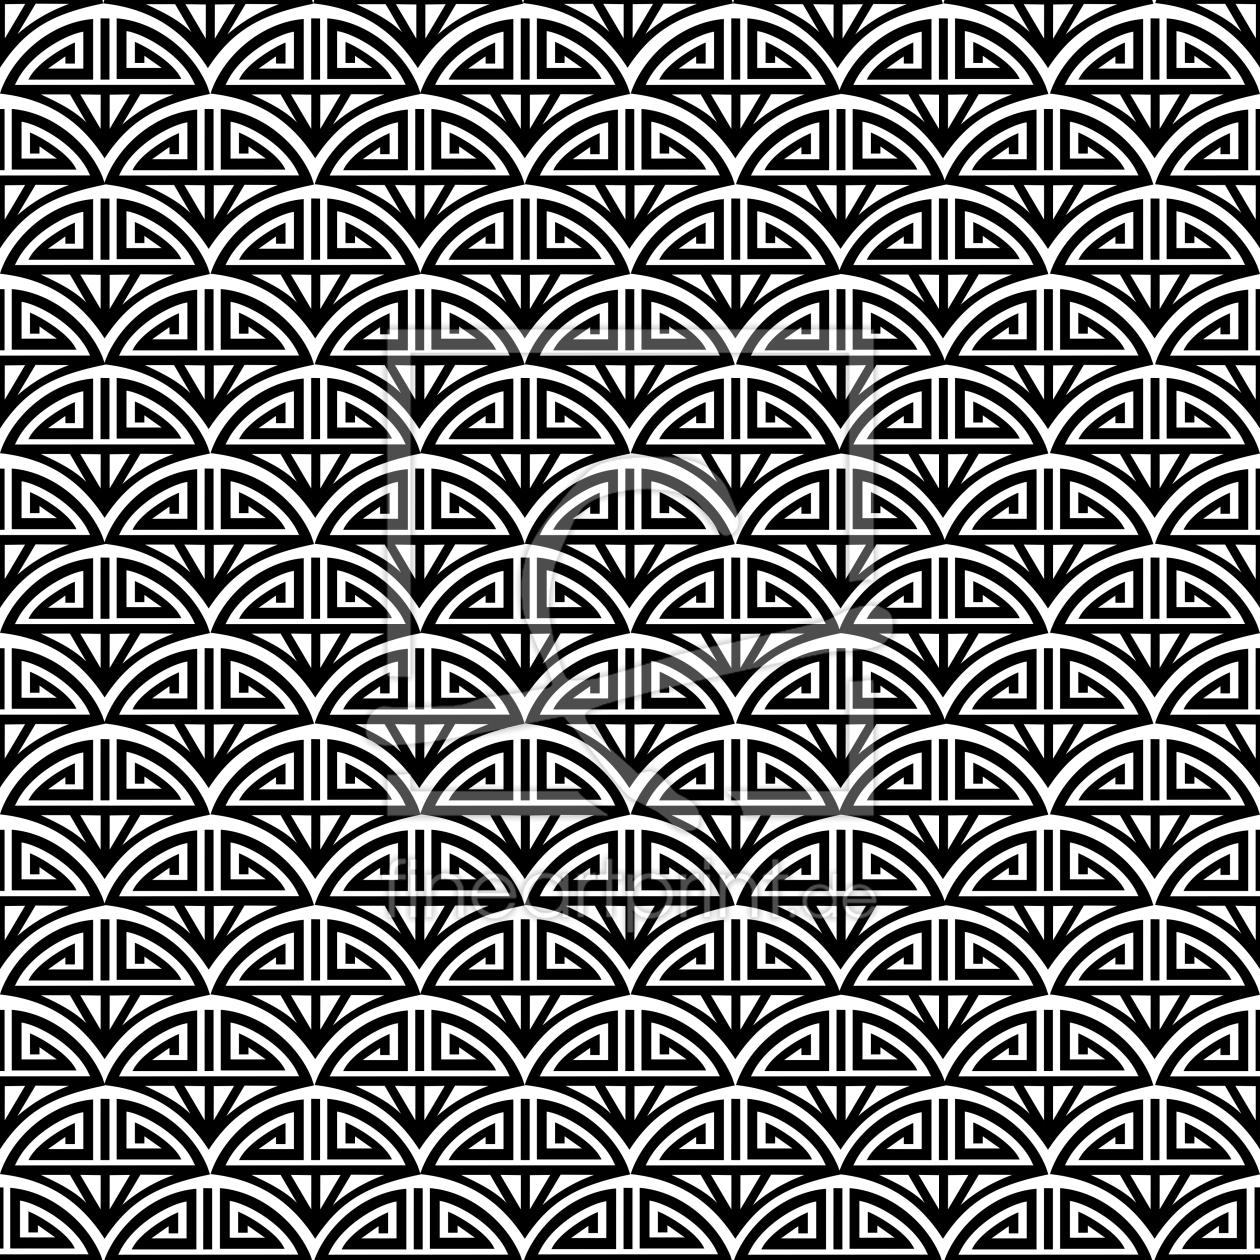 Bild-Nr.: 9024977 Samurai Schwarzweiß erstellt von patterndesigns-com